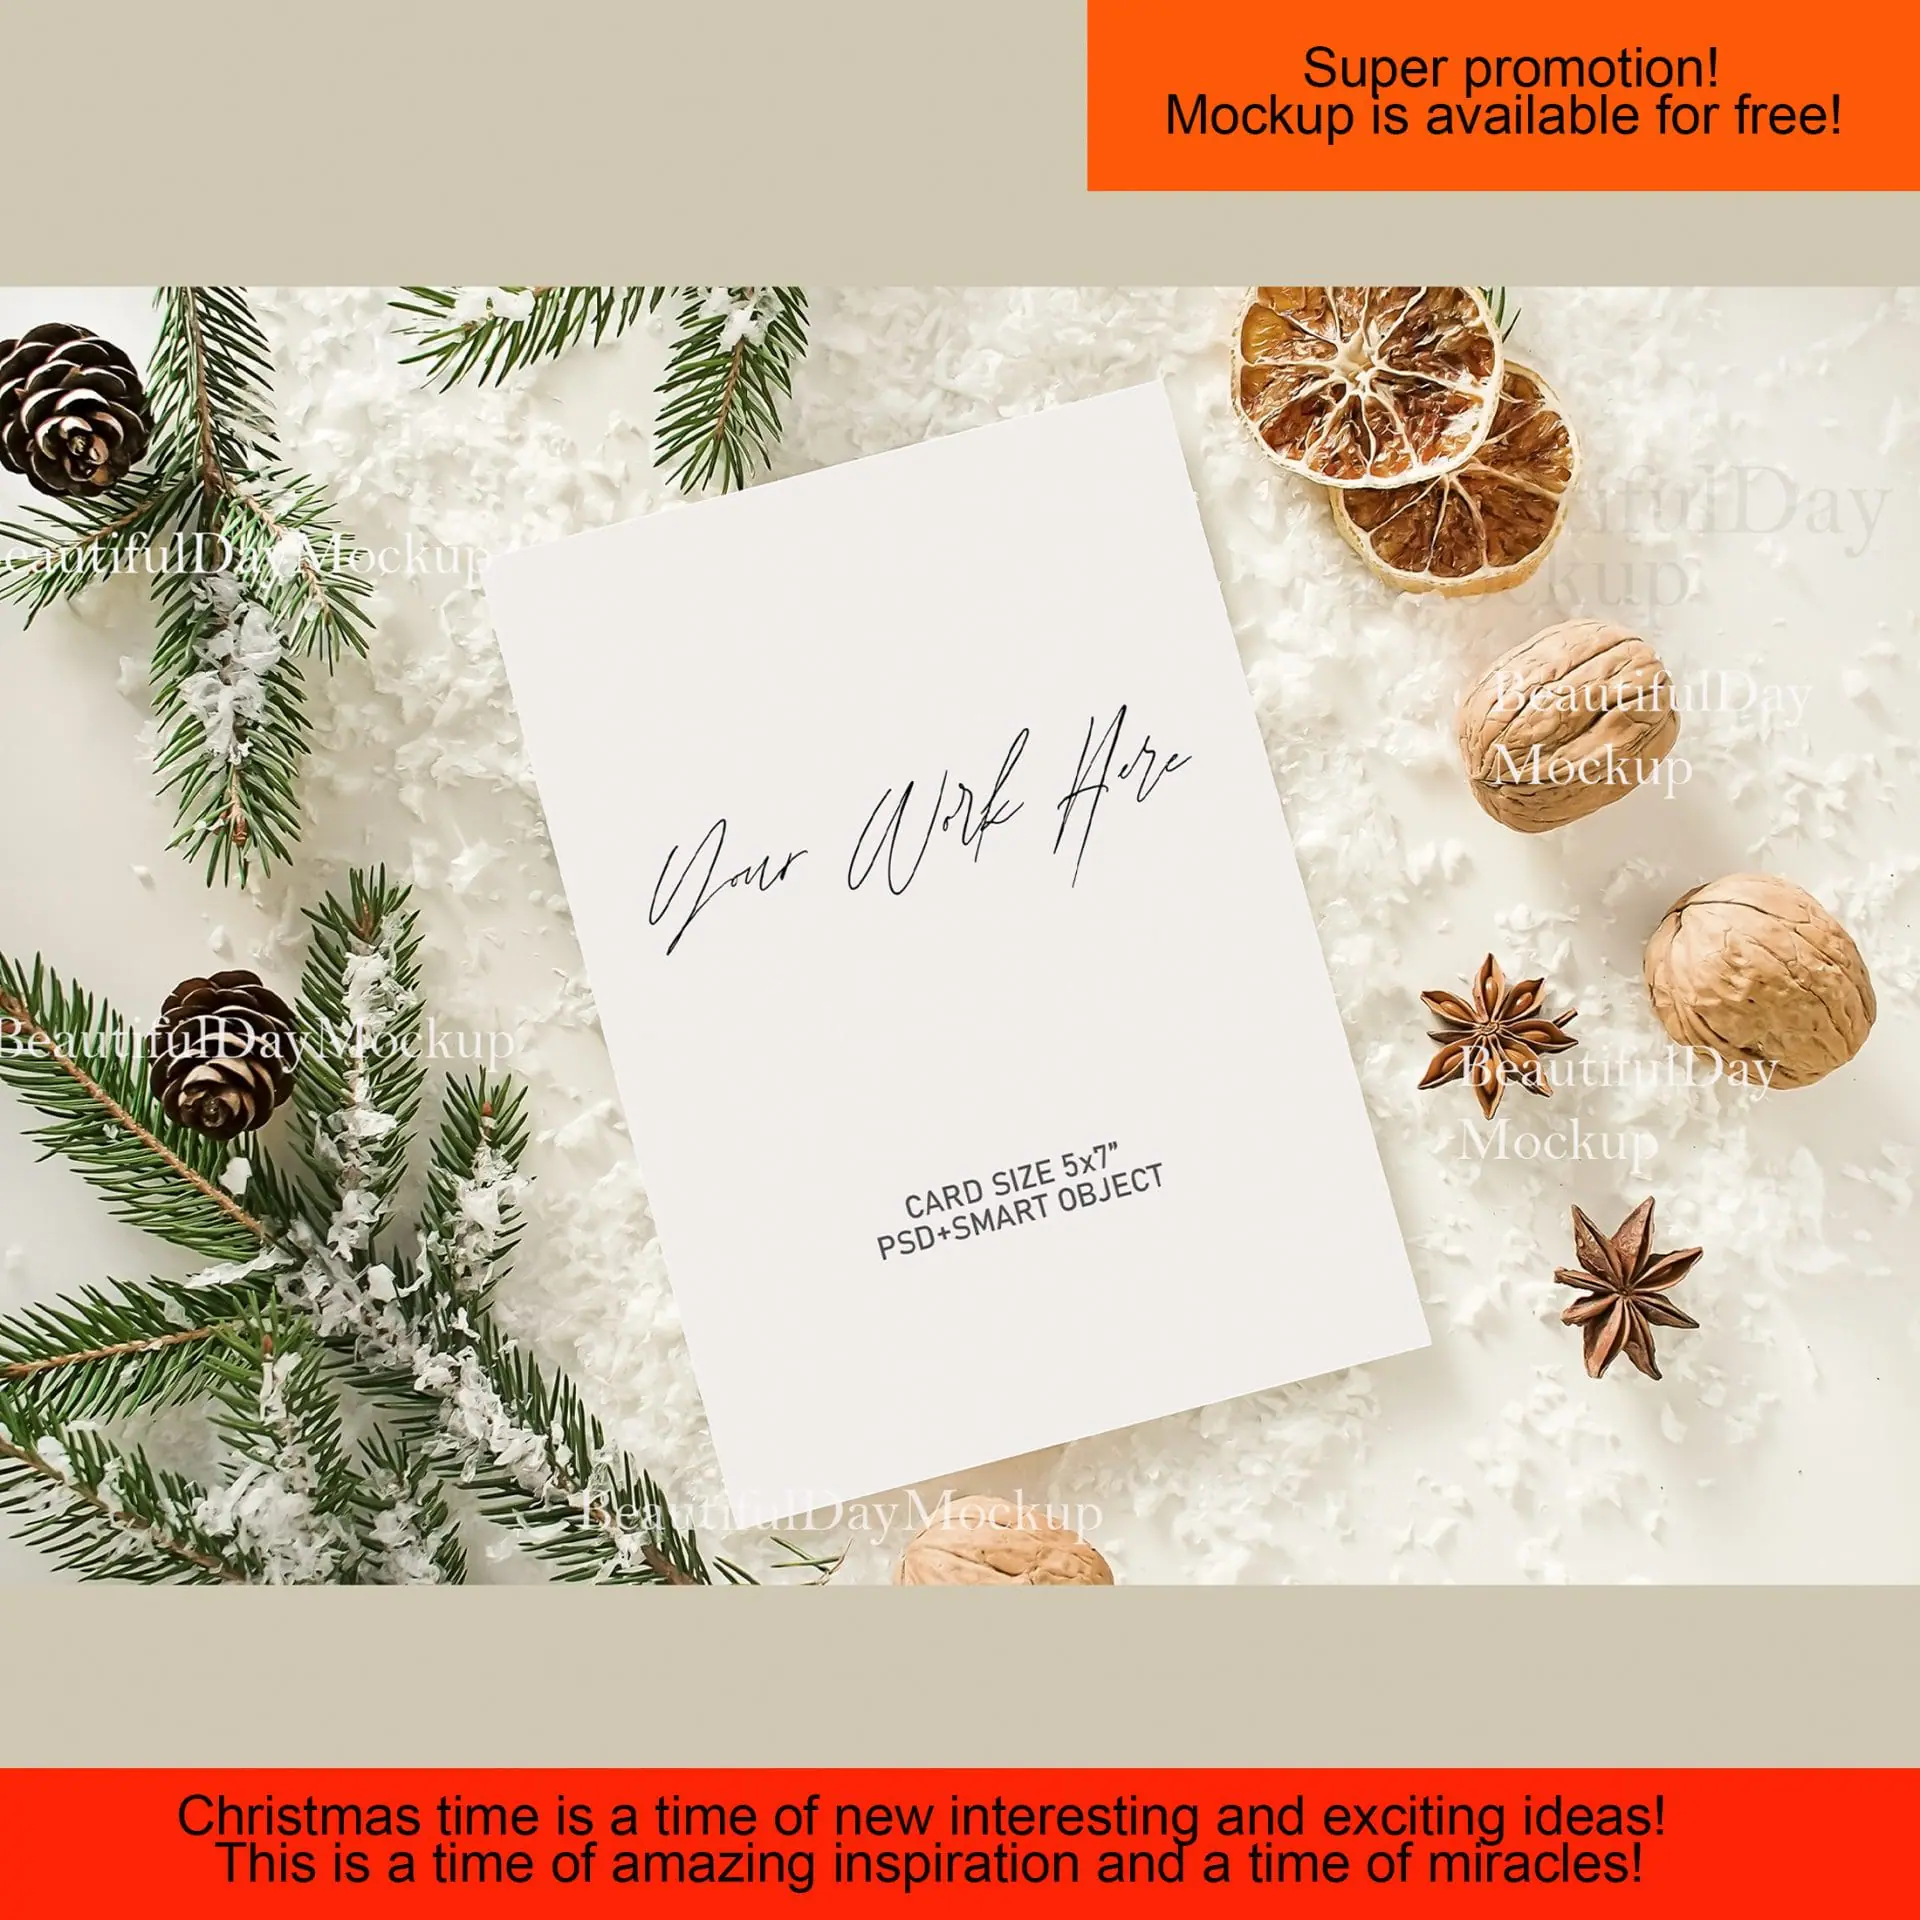 Mockup Holiday card,mockup Christmas card, Holiday card, Christmas card